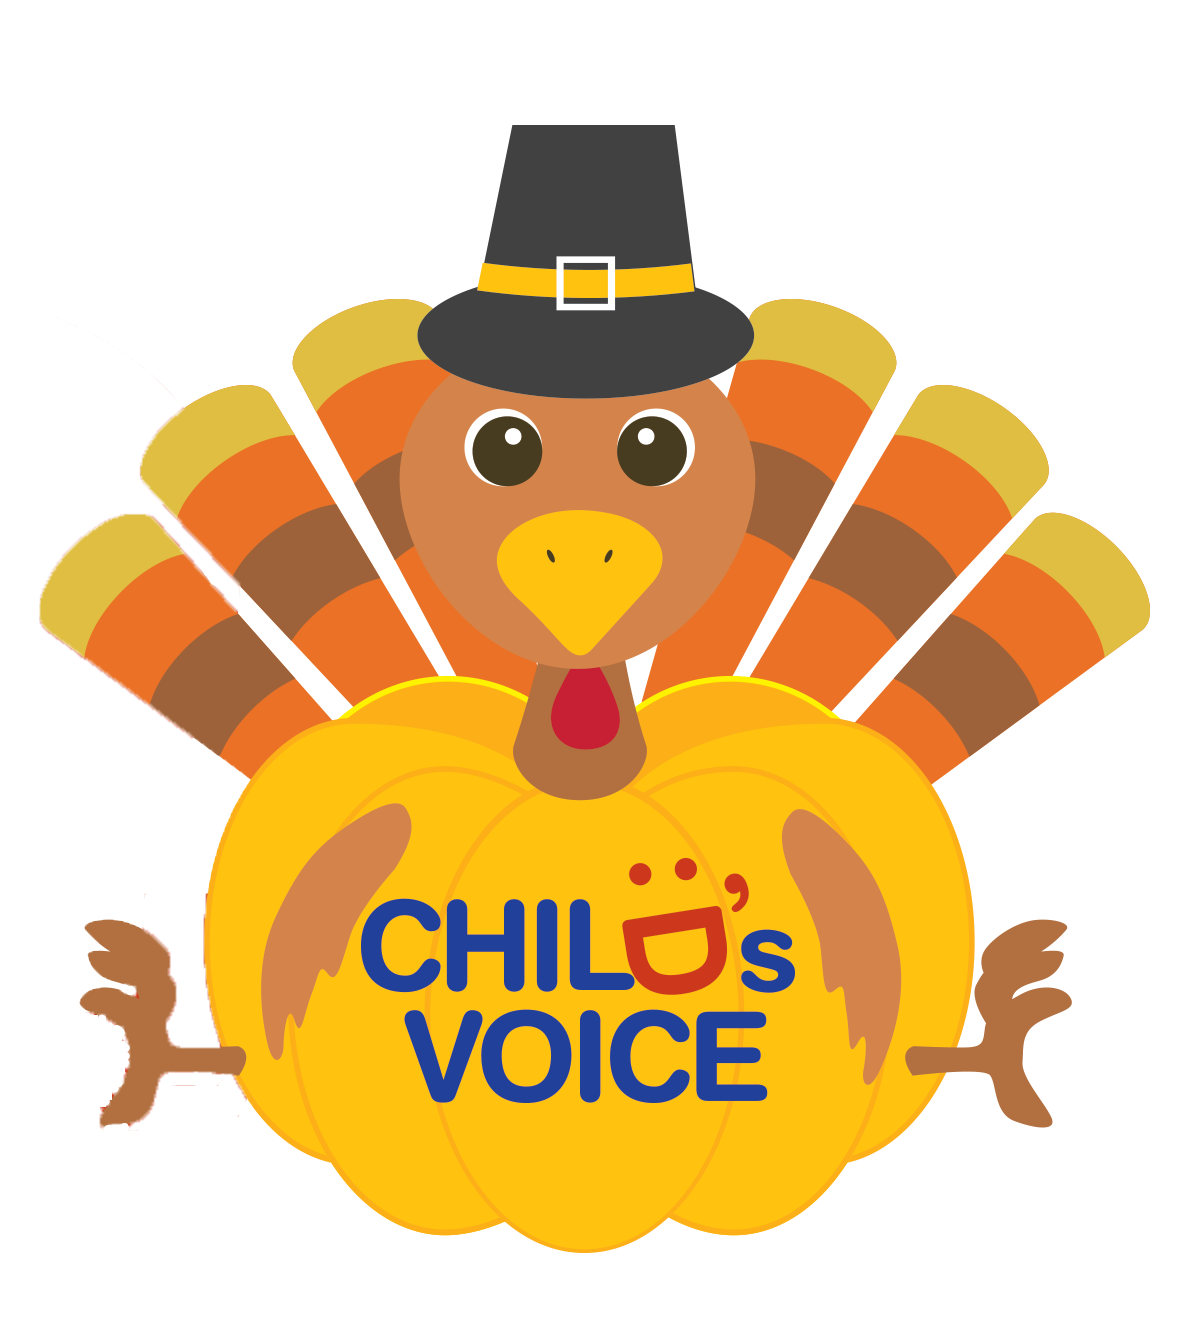 Turkey with Child's Voice logo